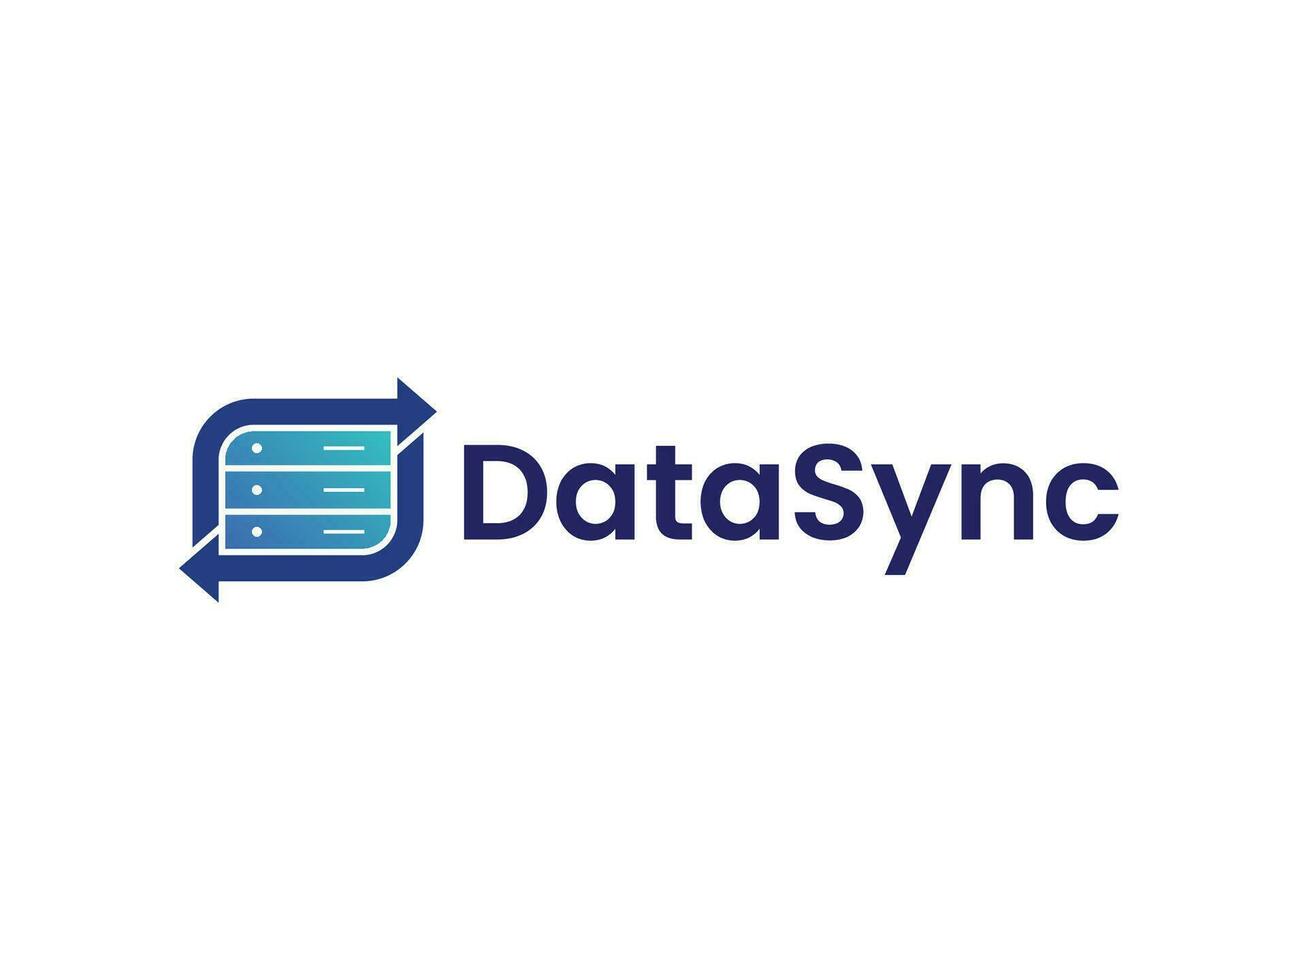 digital data synkronisera logotyp begrepp vektor